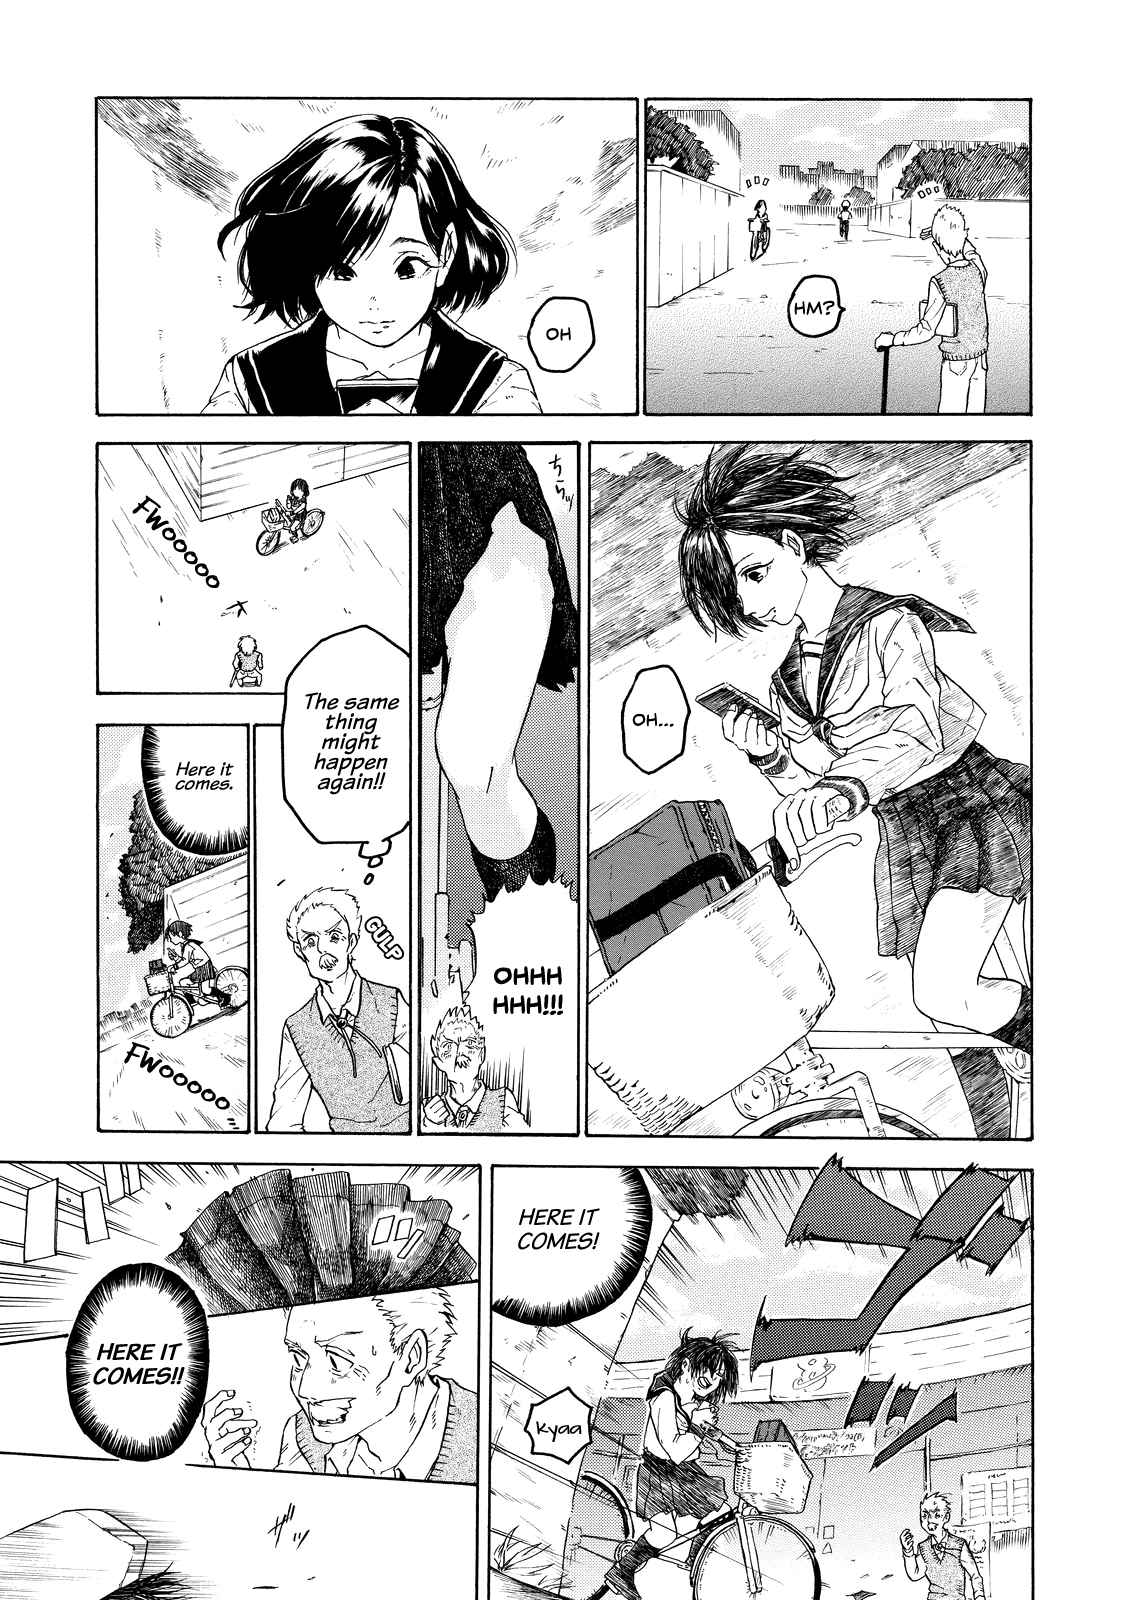 Eguchi kun Doesn't Miss a Thing Vol. 1 Ch. 5 Eguchi kun and Rival.